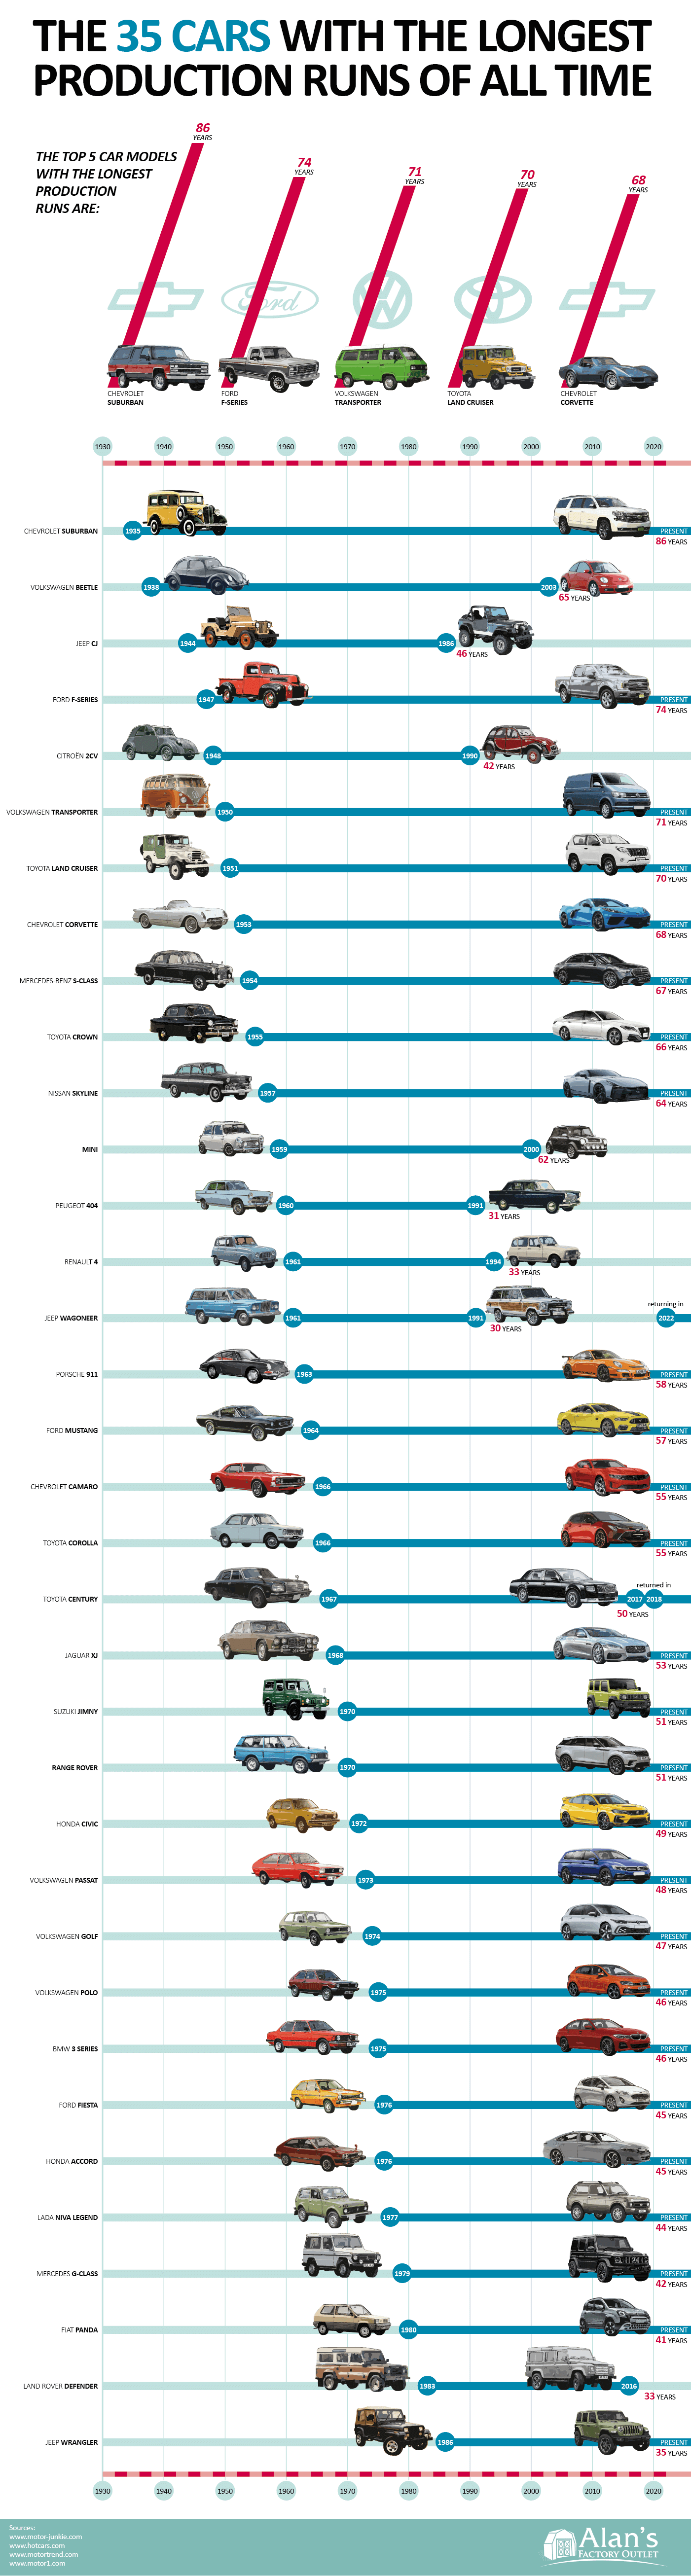 cars-longest-production-runs.png